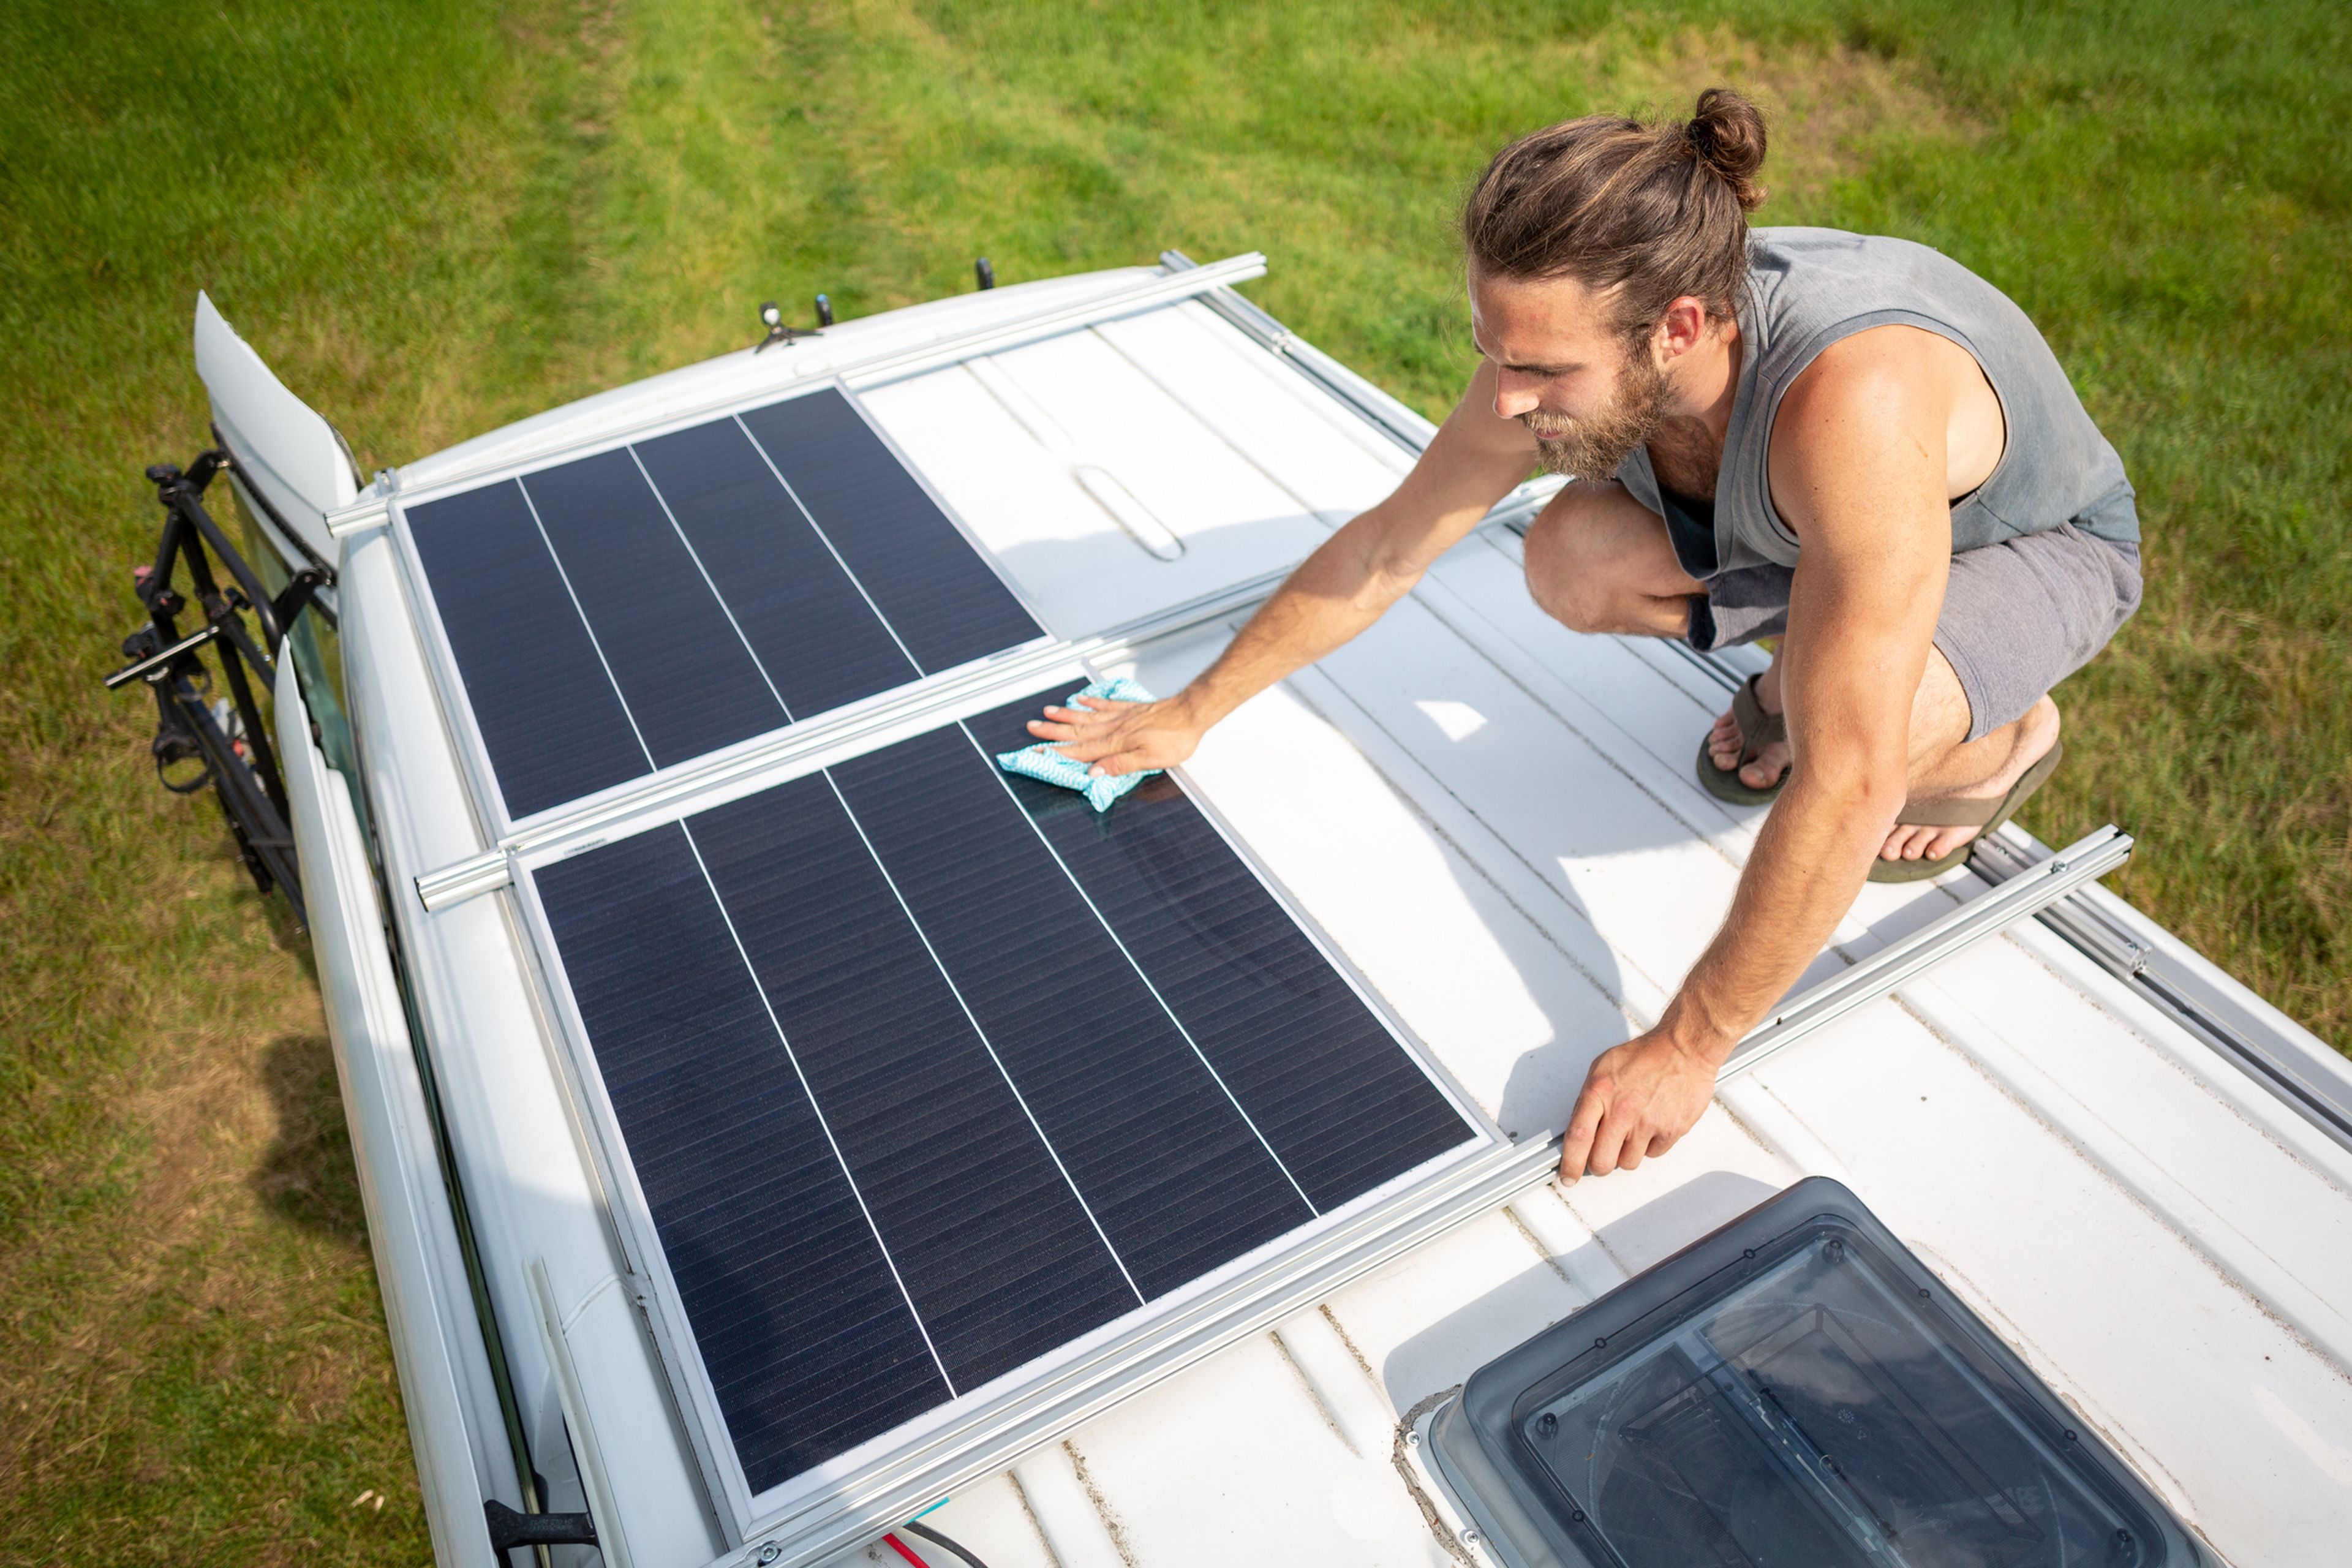 Un hombre coloca unos paneles solares en el techo de una furgoneta.